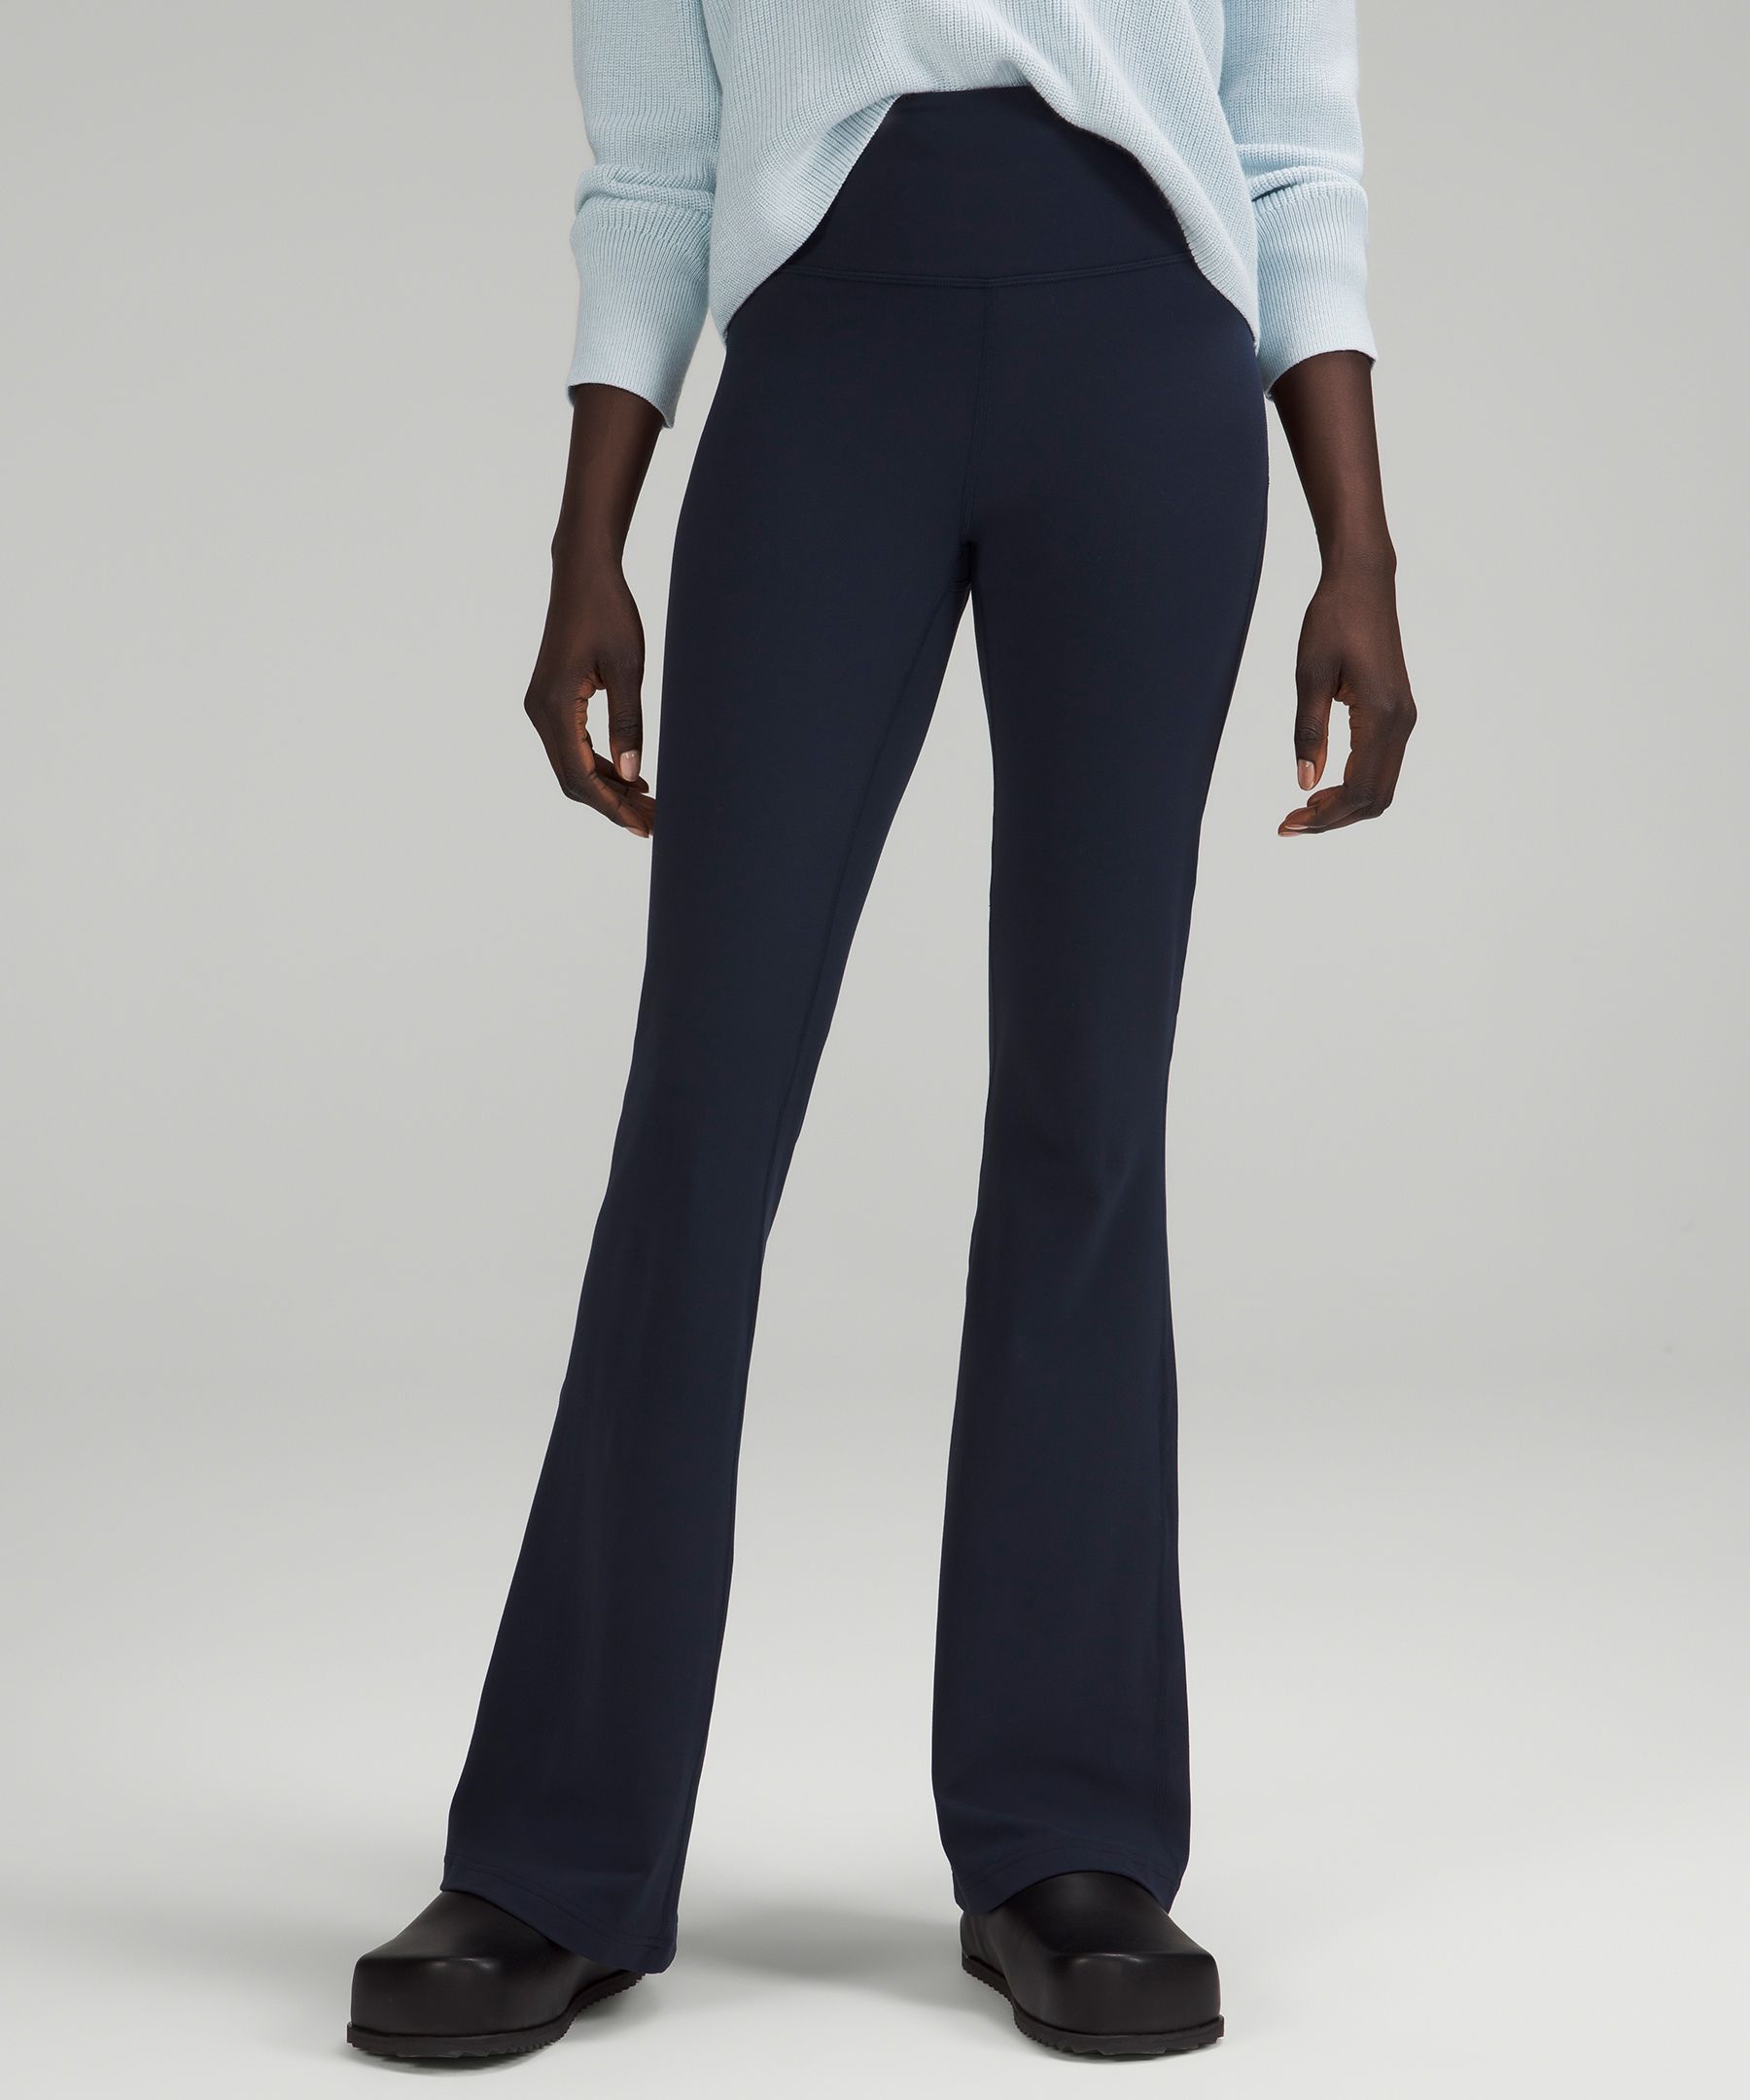 Lululemon Women's Cotton Camo Joggers Sweatpants Tie Waist Pockets Size 2 